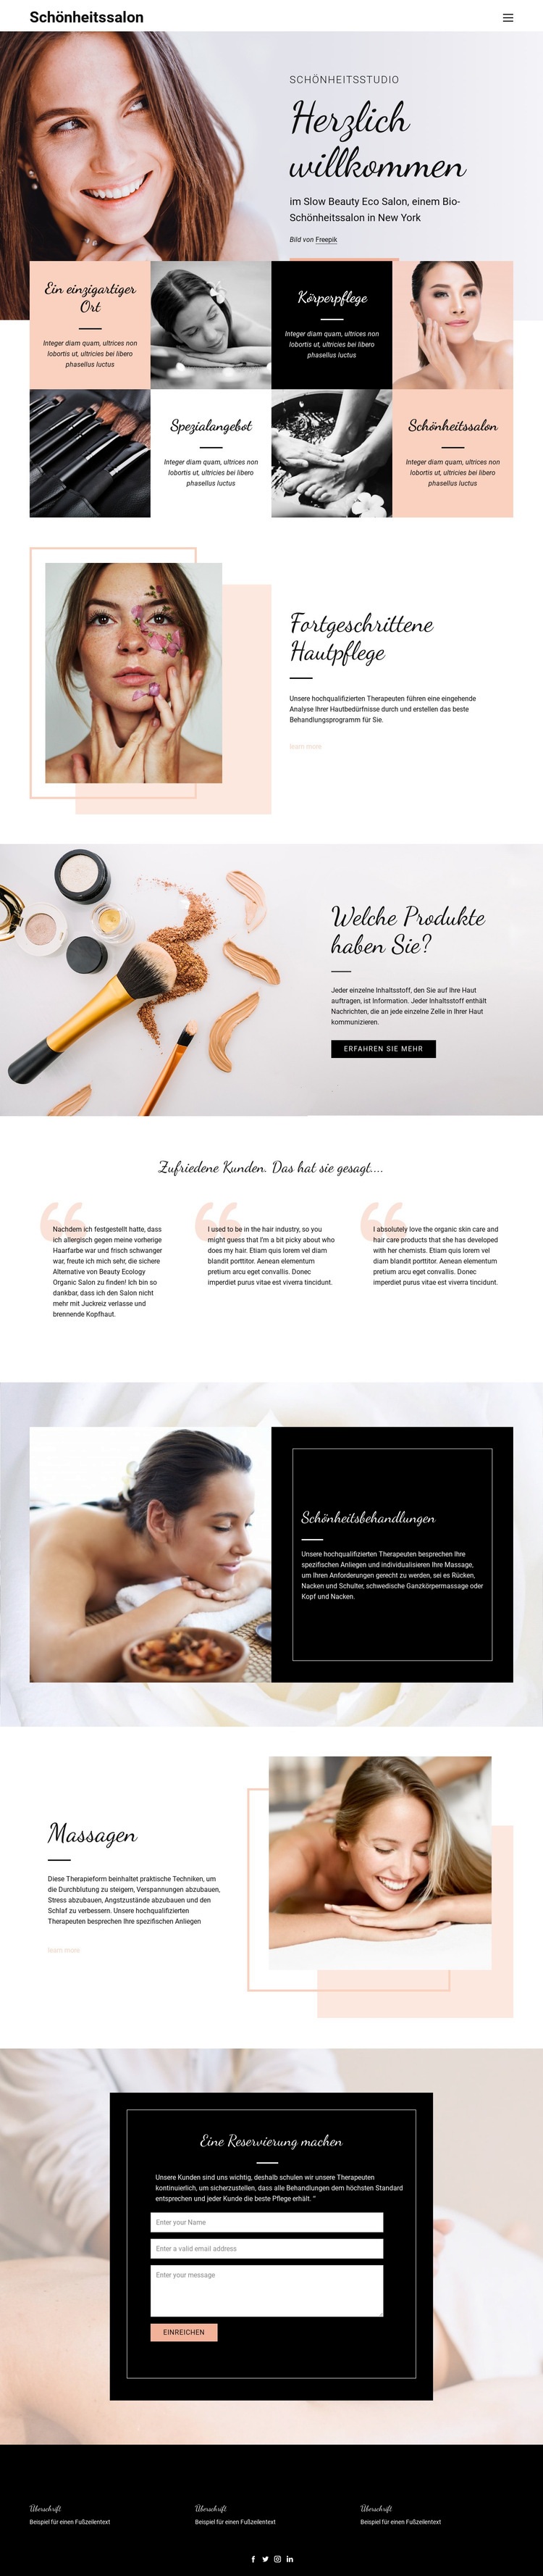 Friseur-, Nagel- und Schönheitssalon Website design